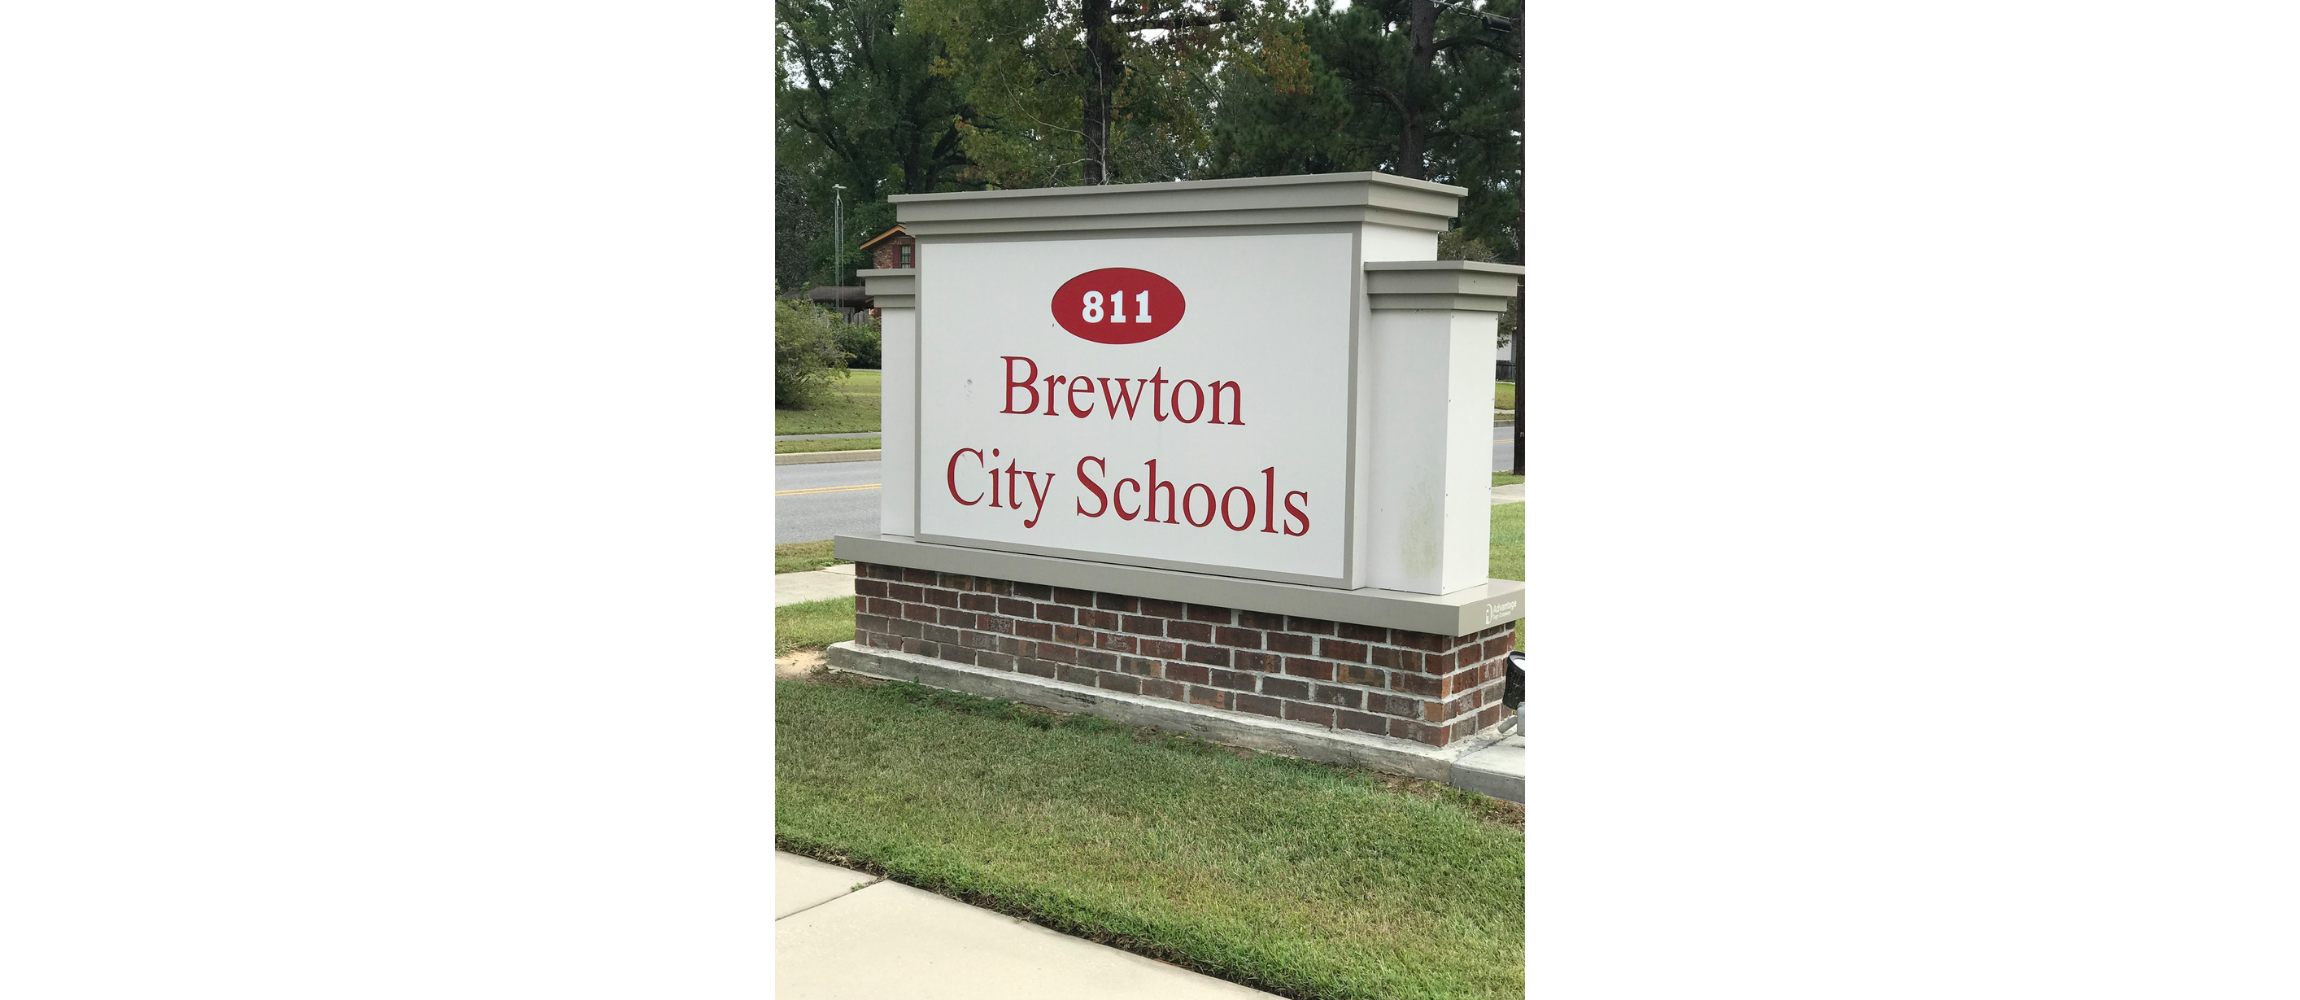 Brewton City Schools 